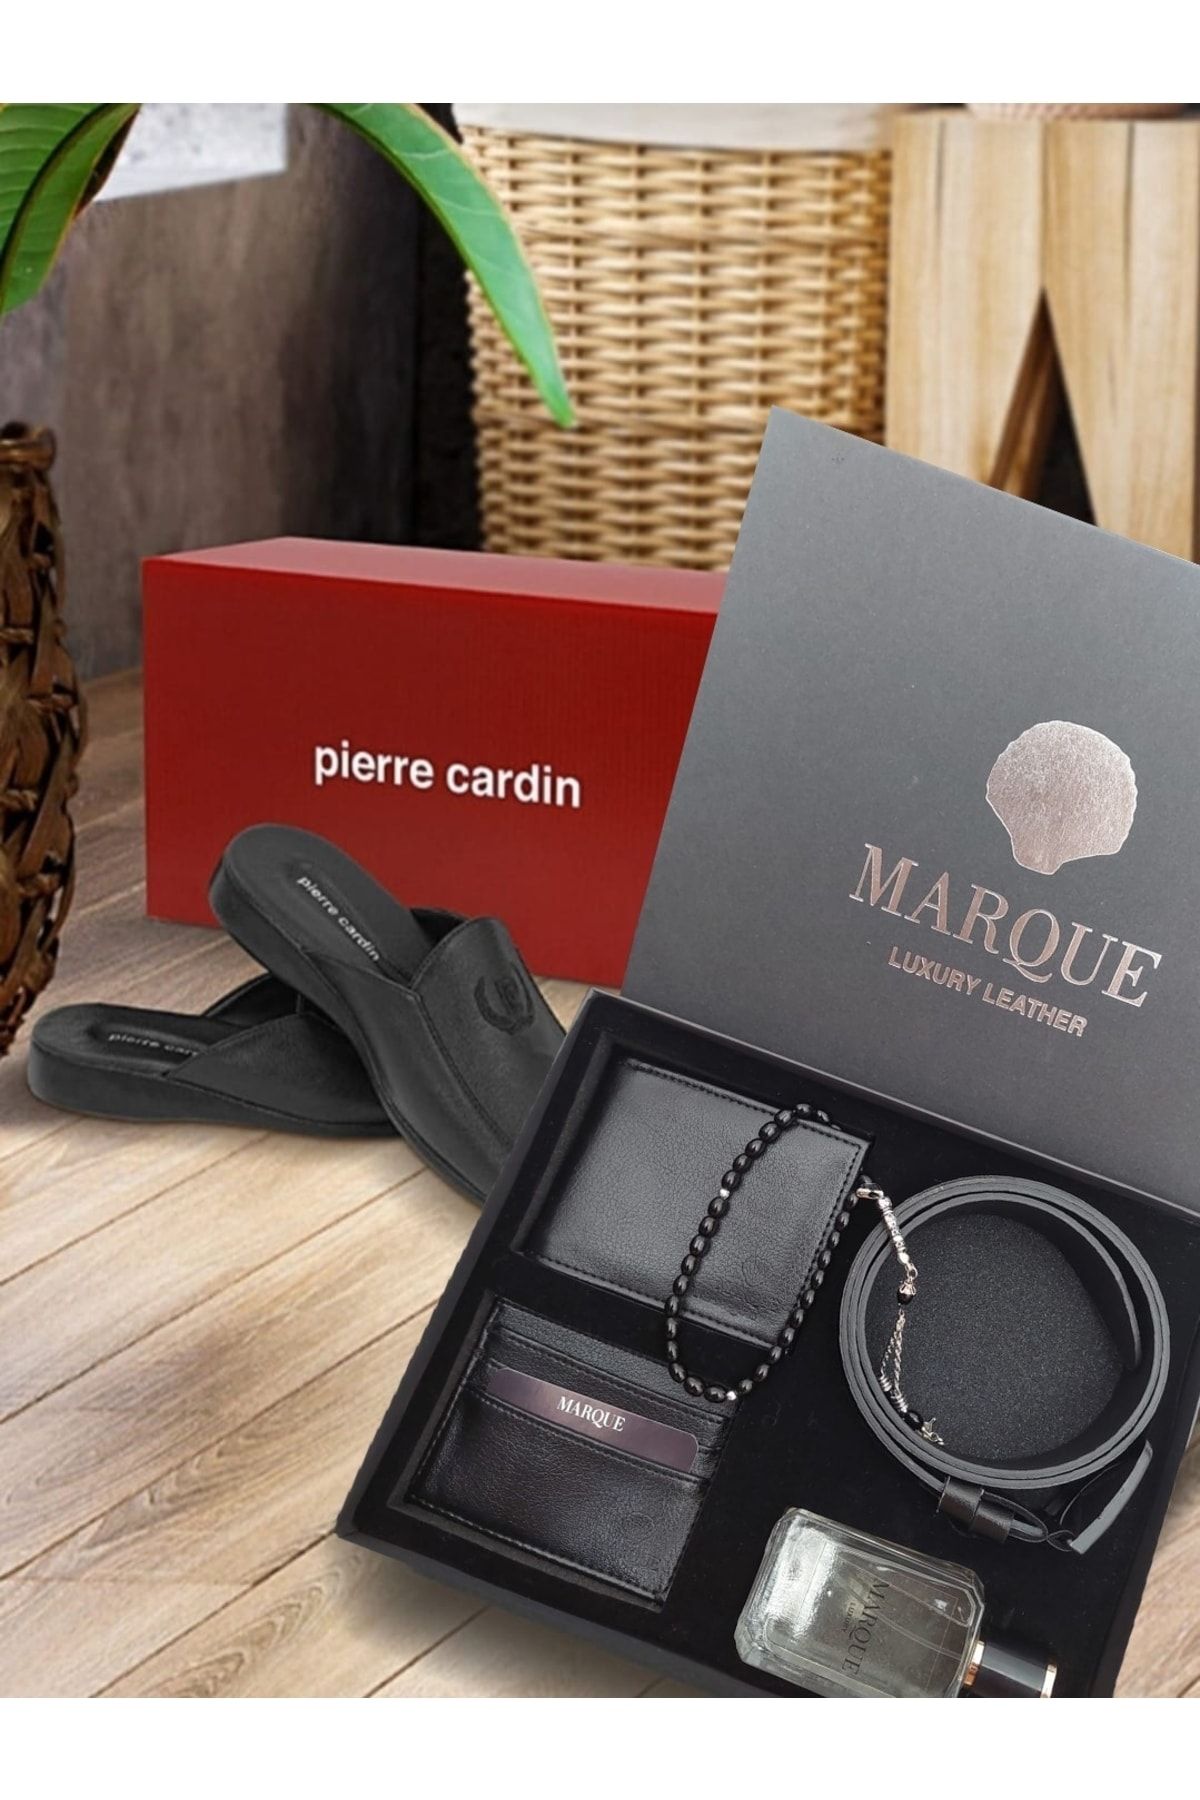 Pierre Cardin Erkek Terlik Ve Marque Sosyethepazarı Çeyizlik Düğün Cüzdan Kemer Parfüm Aksesuar Set